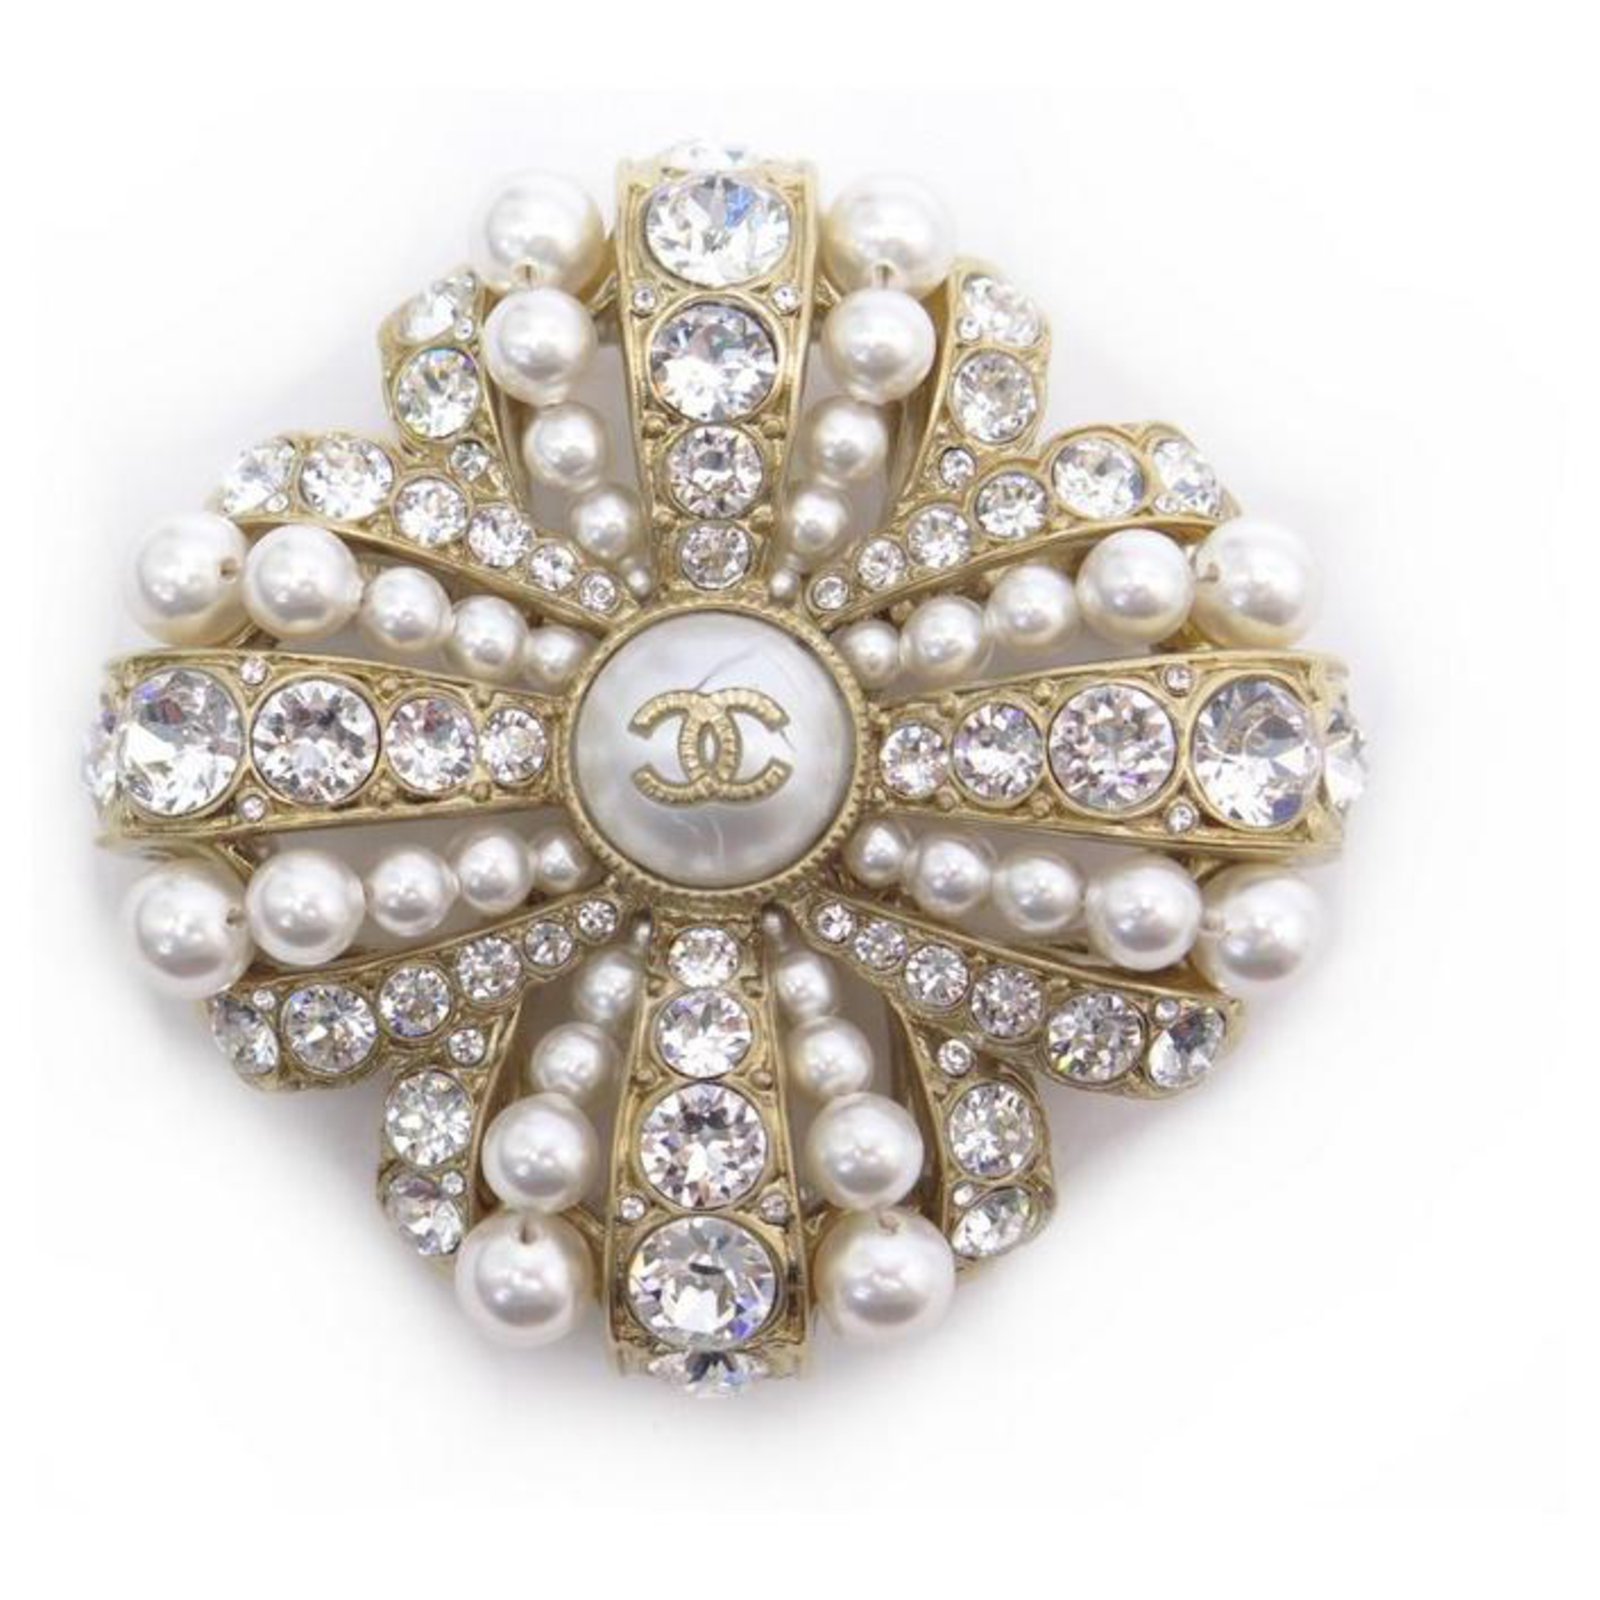 Unique pieces of jewellery: Le Paris Russe De Chanel 